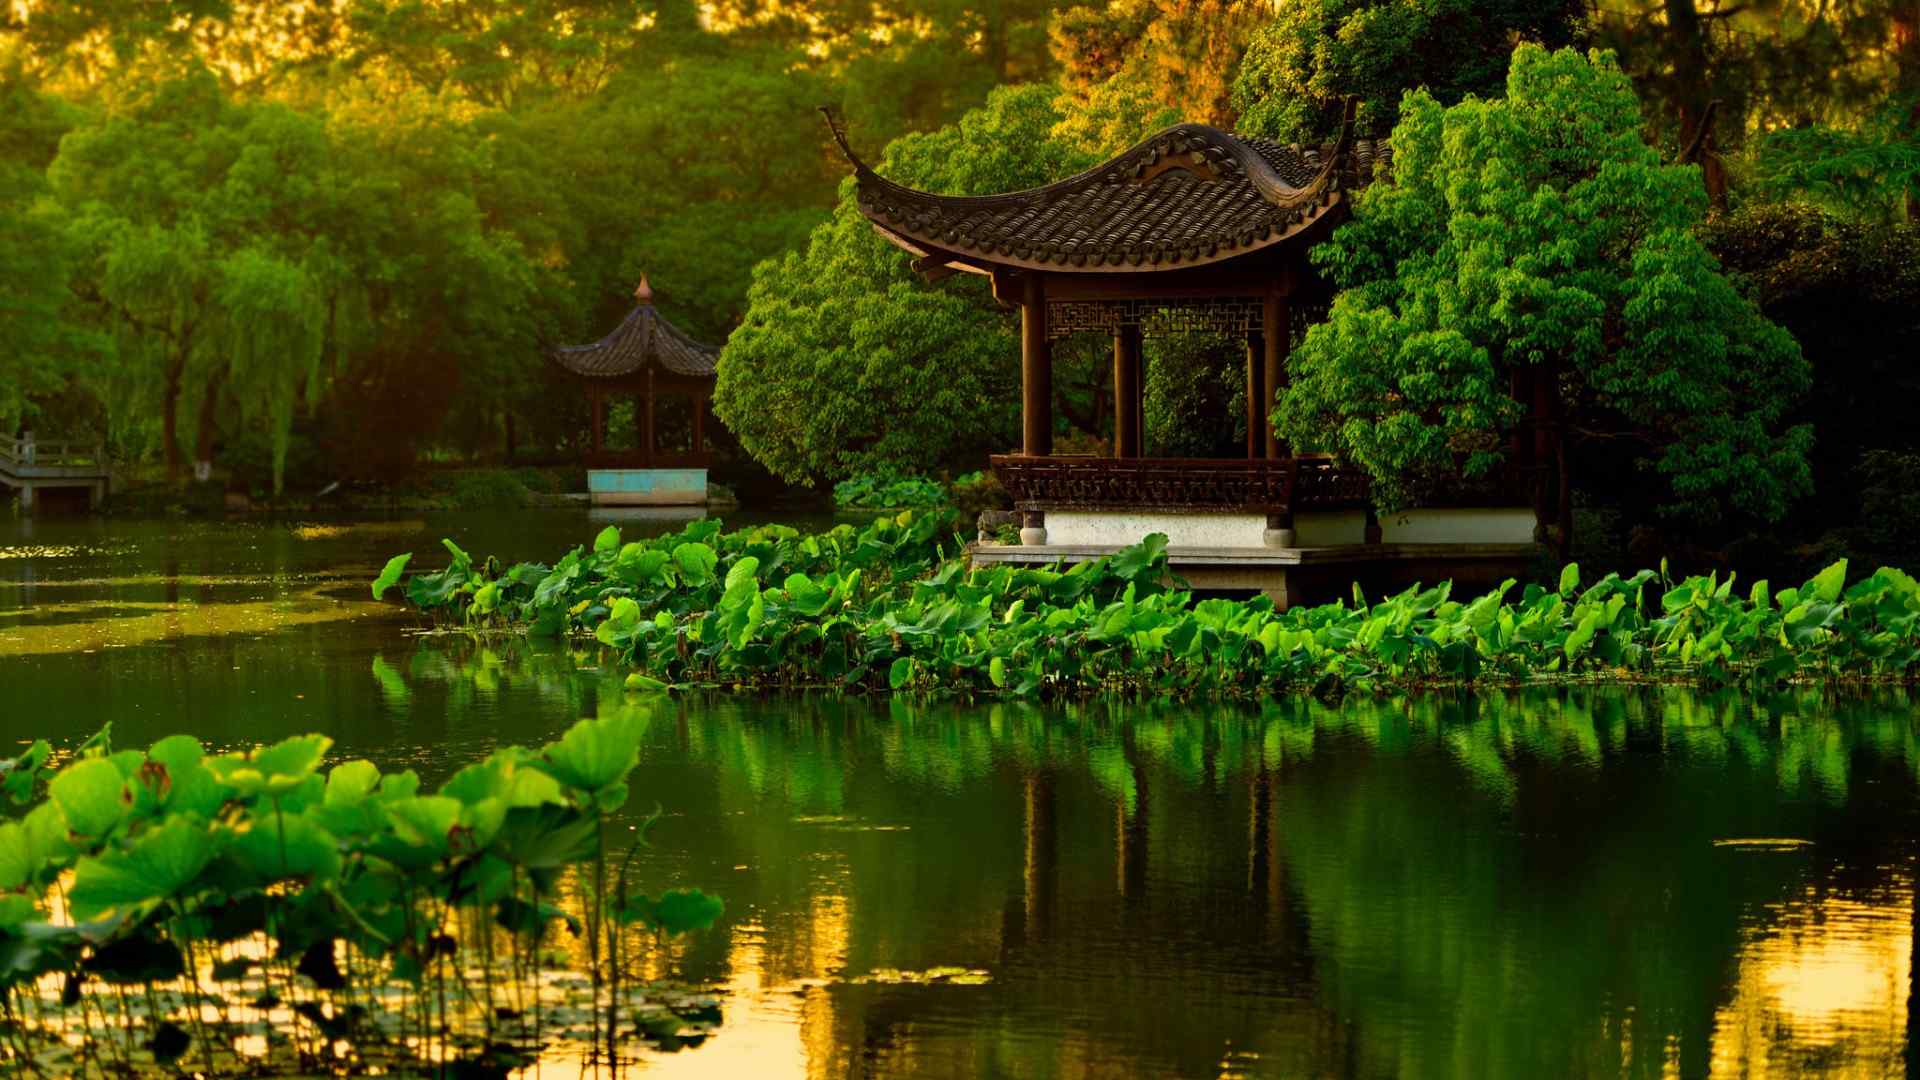 杭州西湖公园凉亭池塘荷花风景壁纸桌面